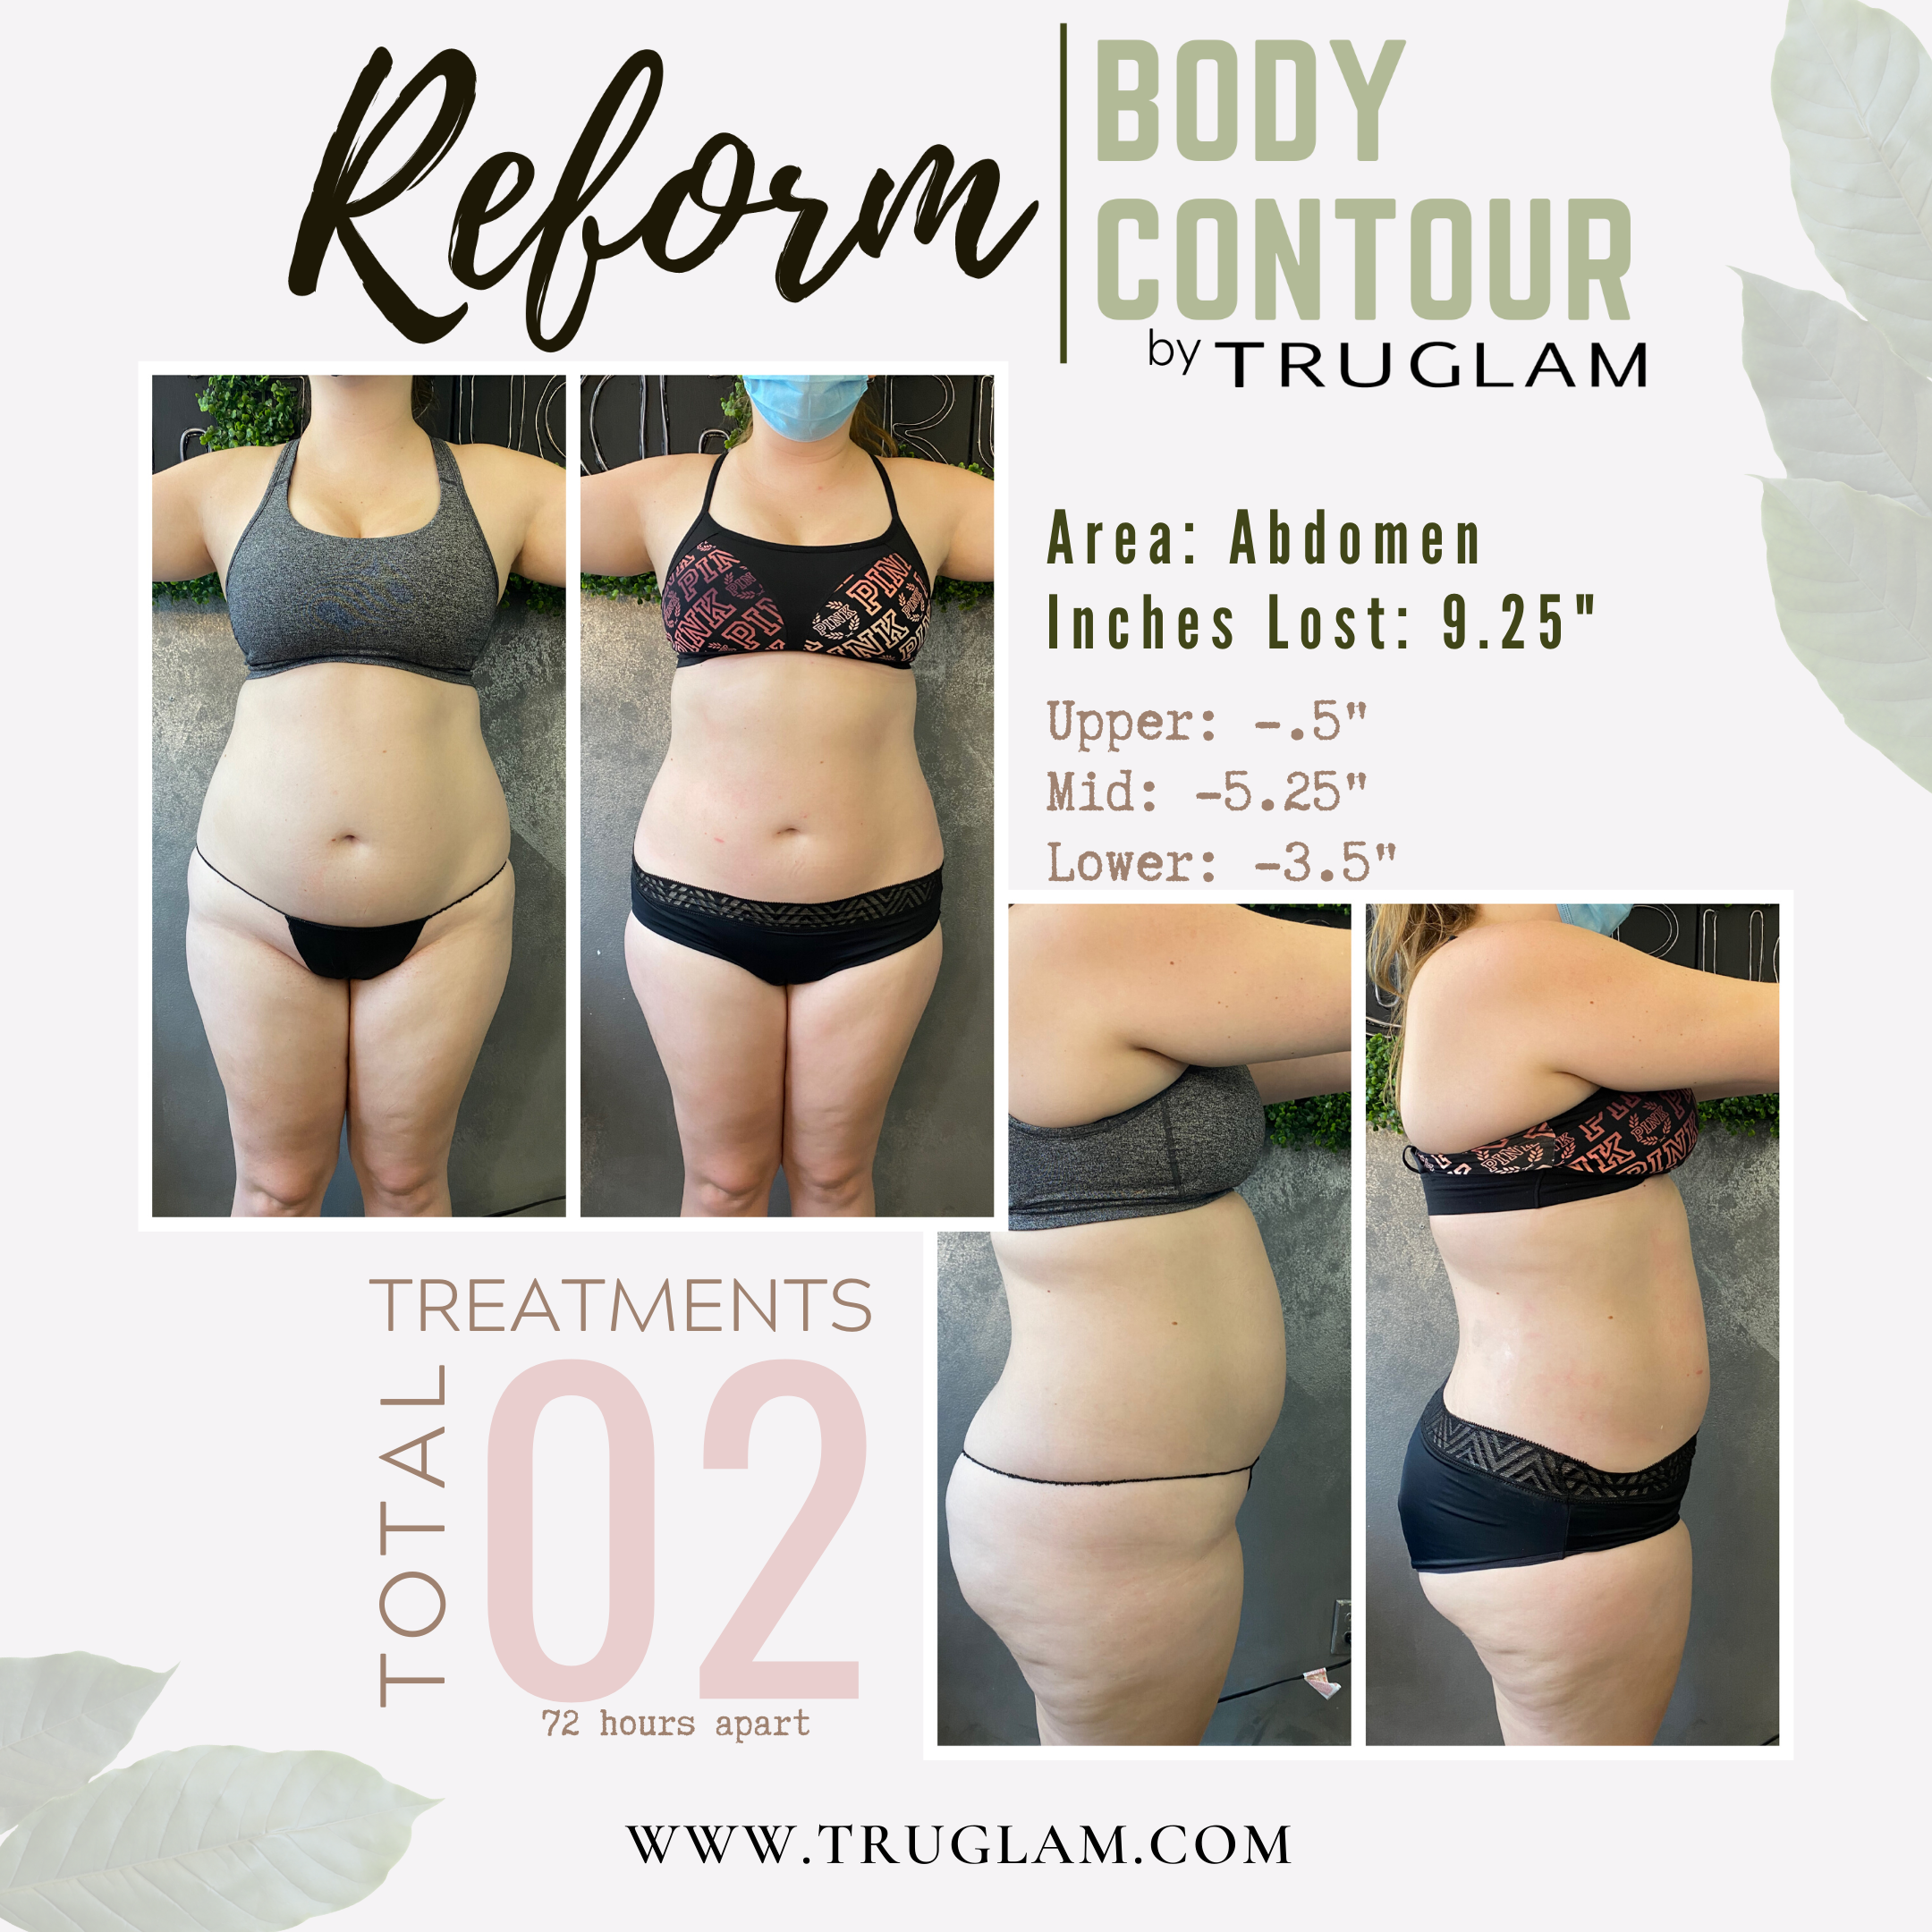 Reform - Body Contouring — TruGlam